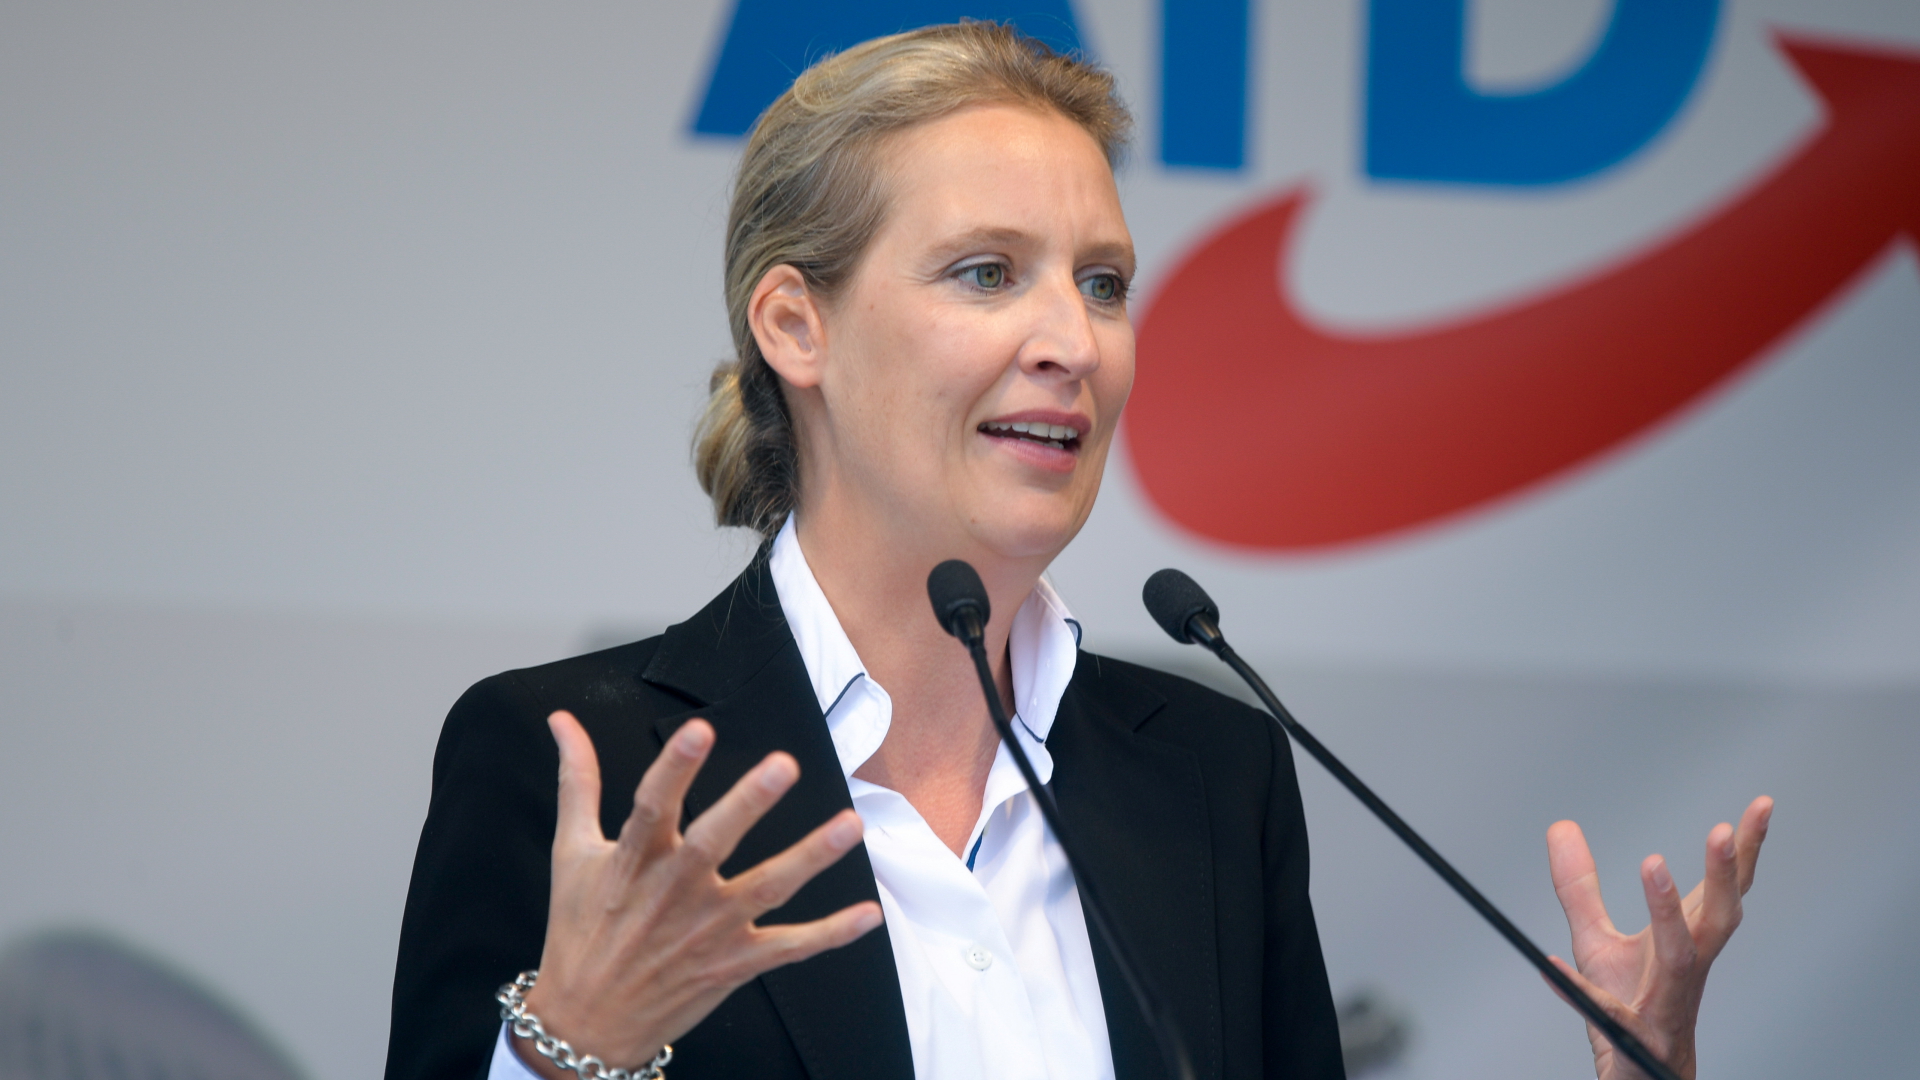 AfD-Spitzenkandidatin Alice Weidel bei einem Wahlkampfauftritt in Schwerin | REUTERS